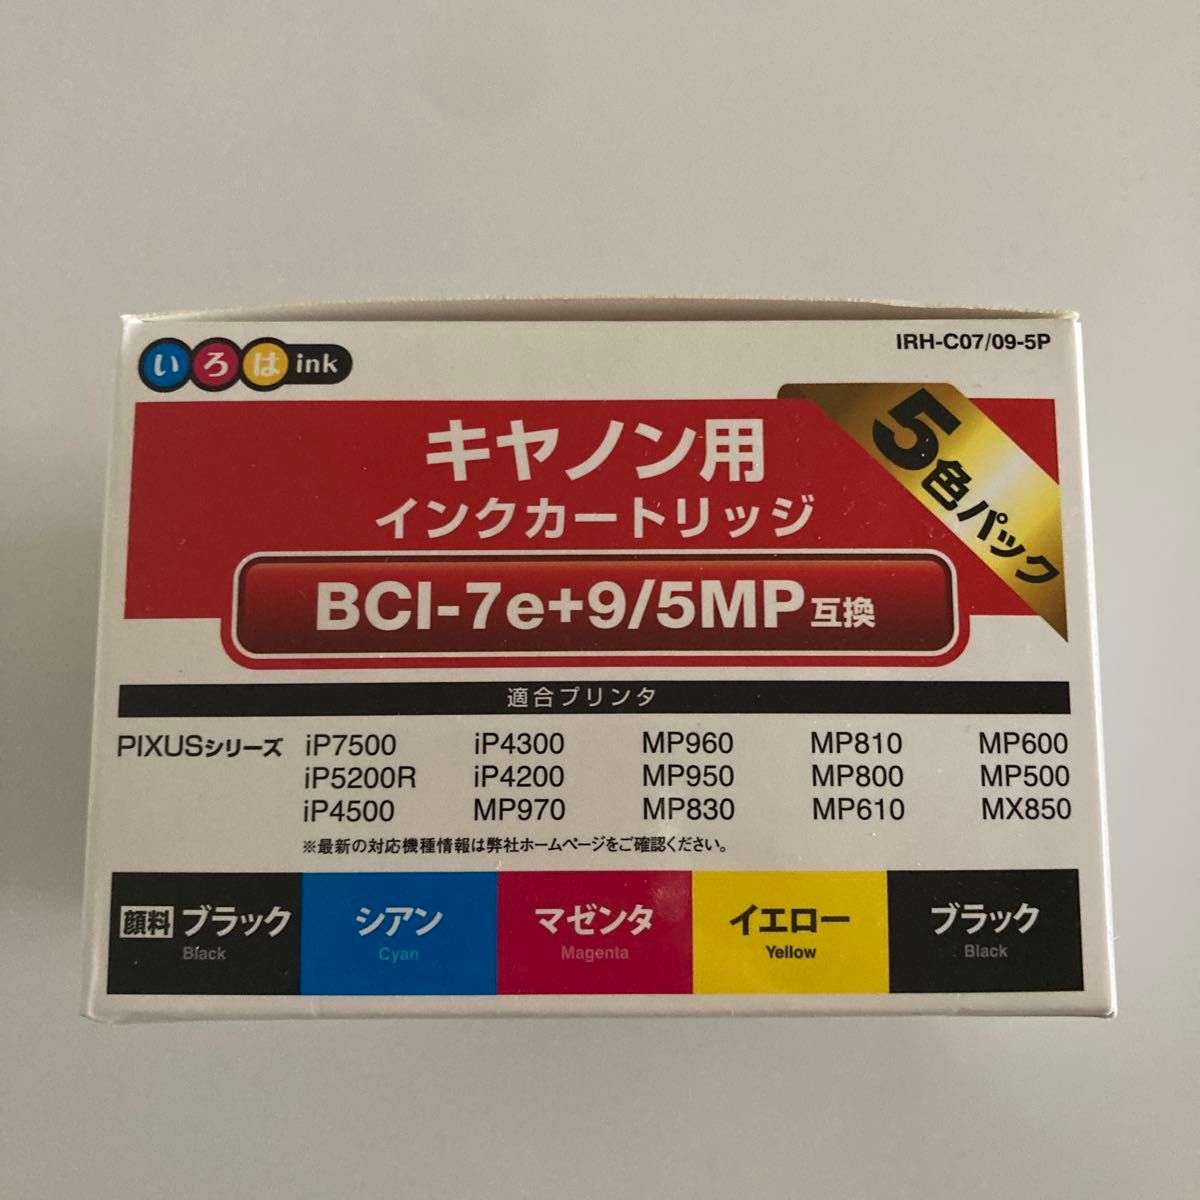 キヤノン用互換インク IRH-C07/09-5P